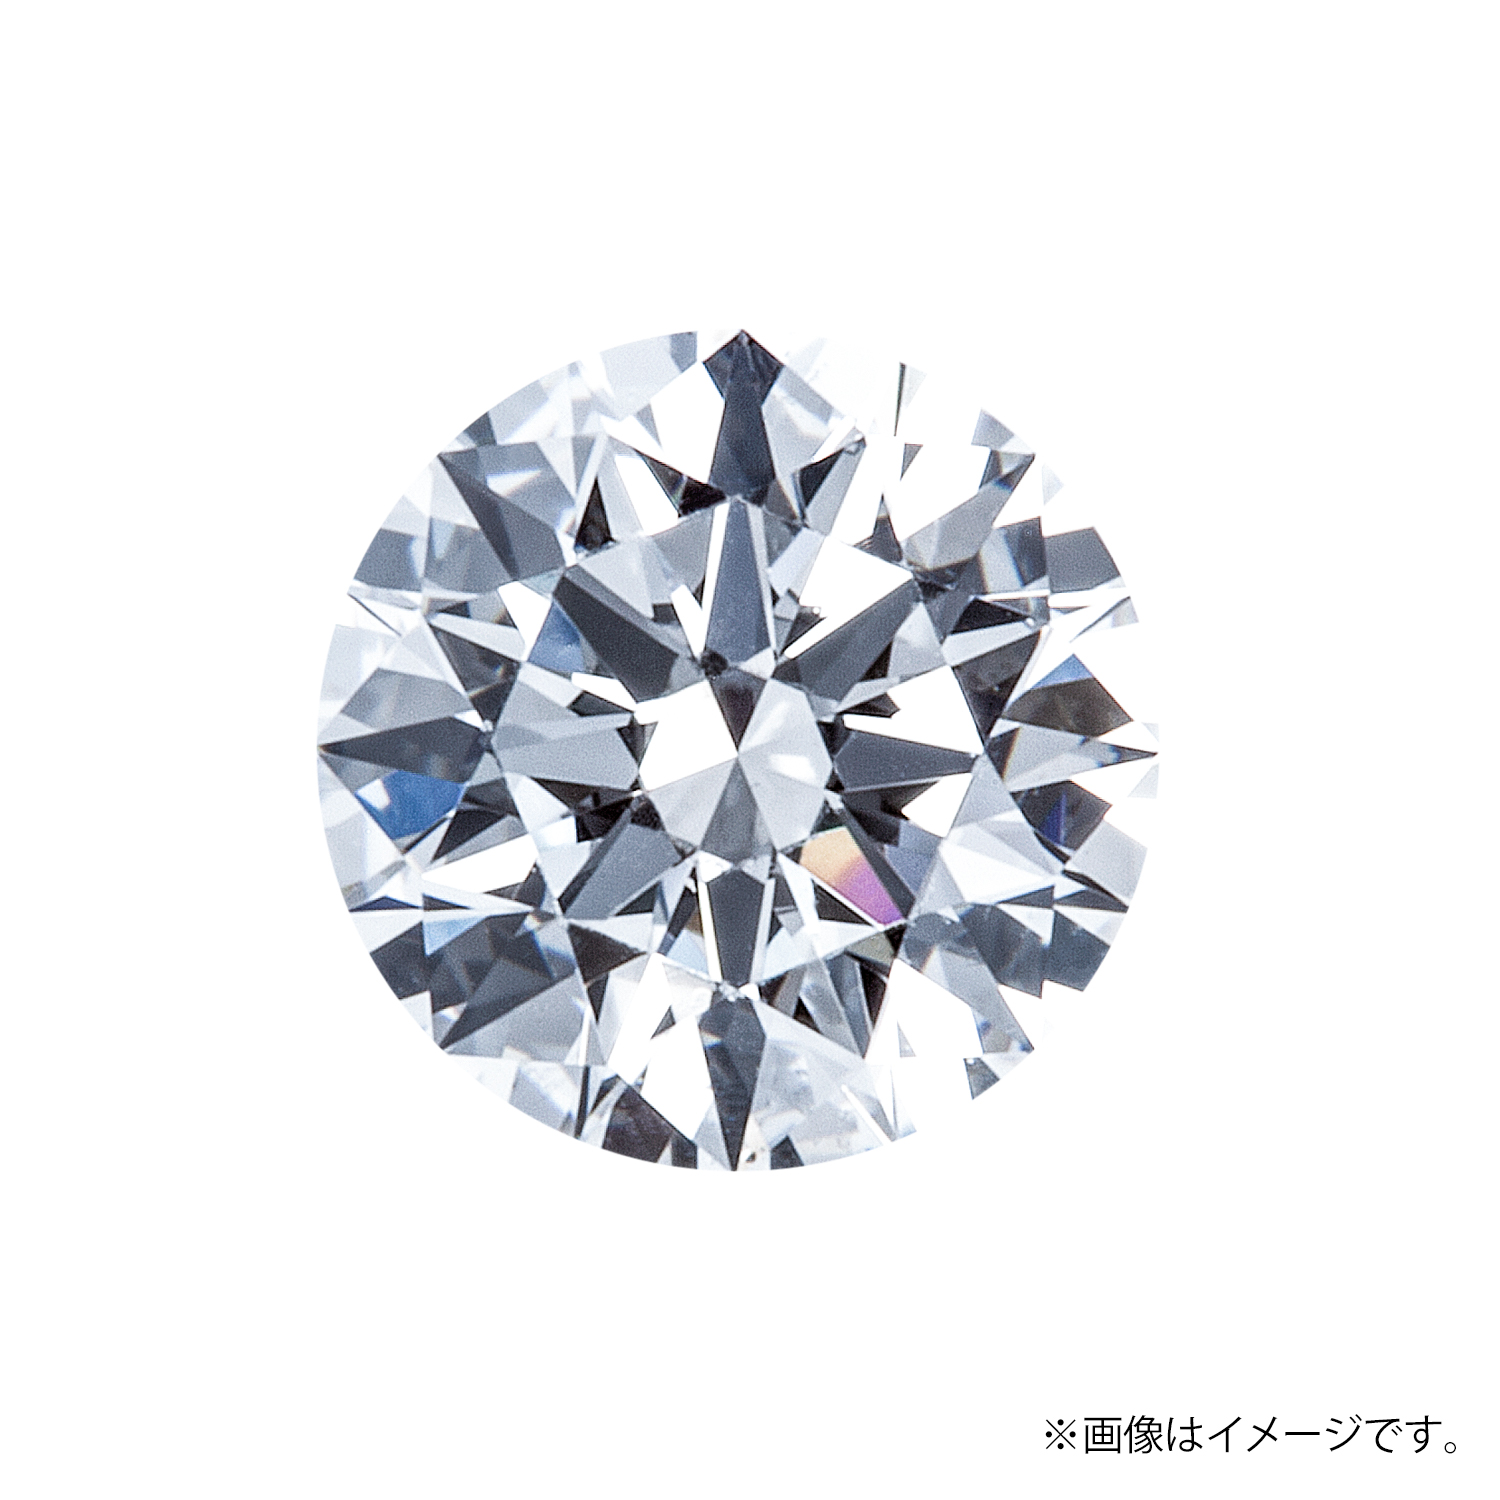 0.203ct Round ダイヤモンド / D / IF / 3EX H&C